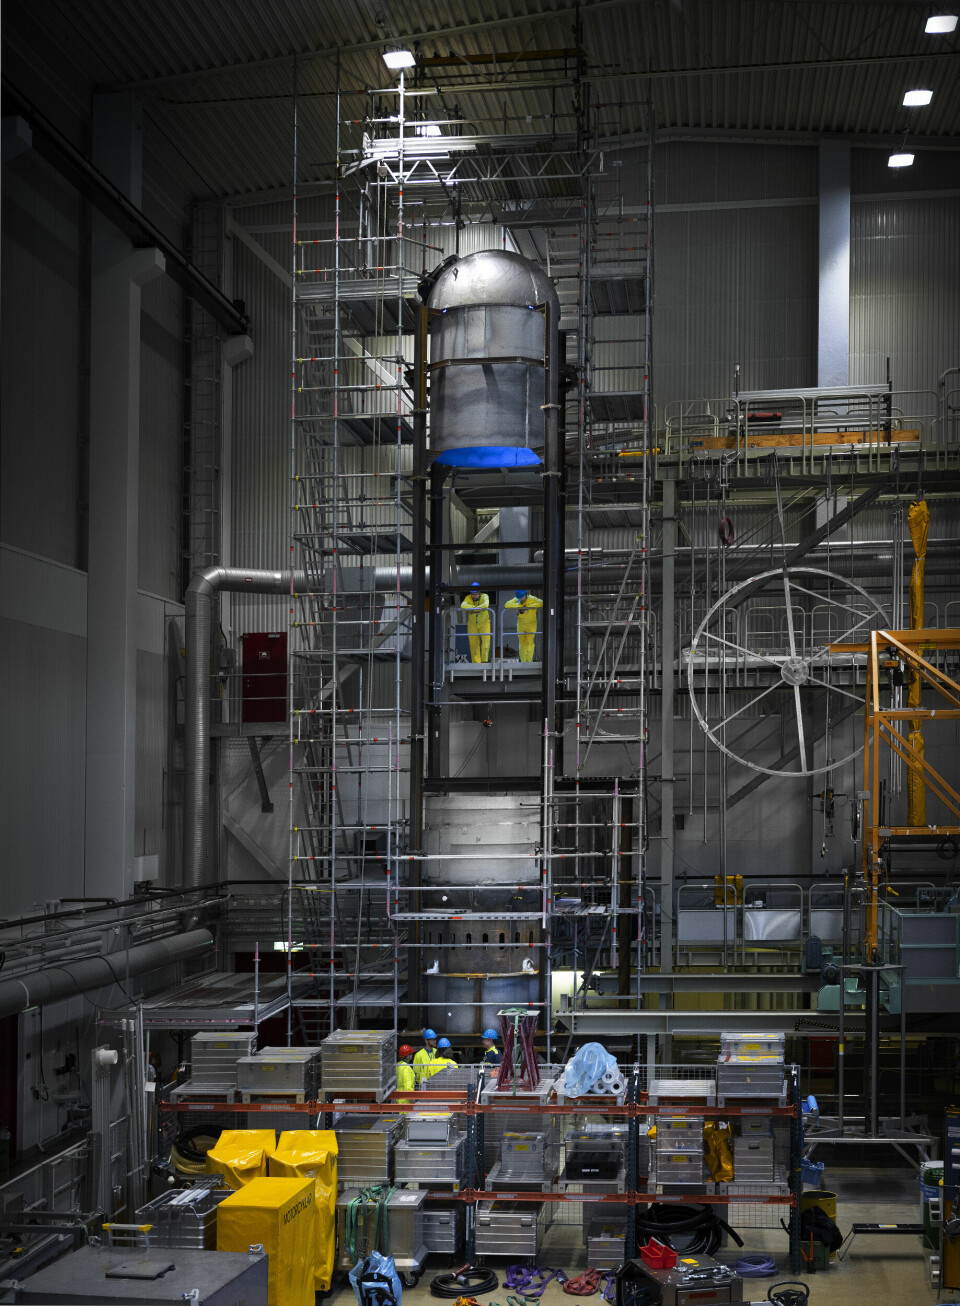 Tryckhållaren är en av tryckvattenreaktorns allra största komponenter. En fullskalig kopia byggdes på Ringhals för att träna på reparationsmomenten när elvärmarna rengjordes.